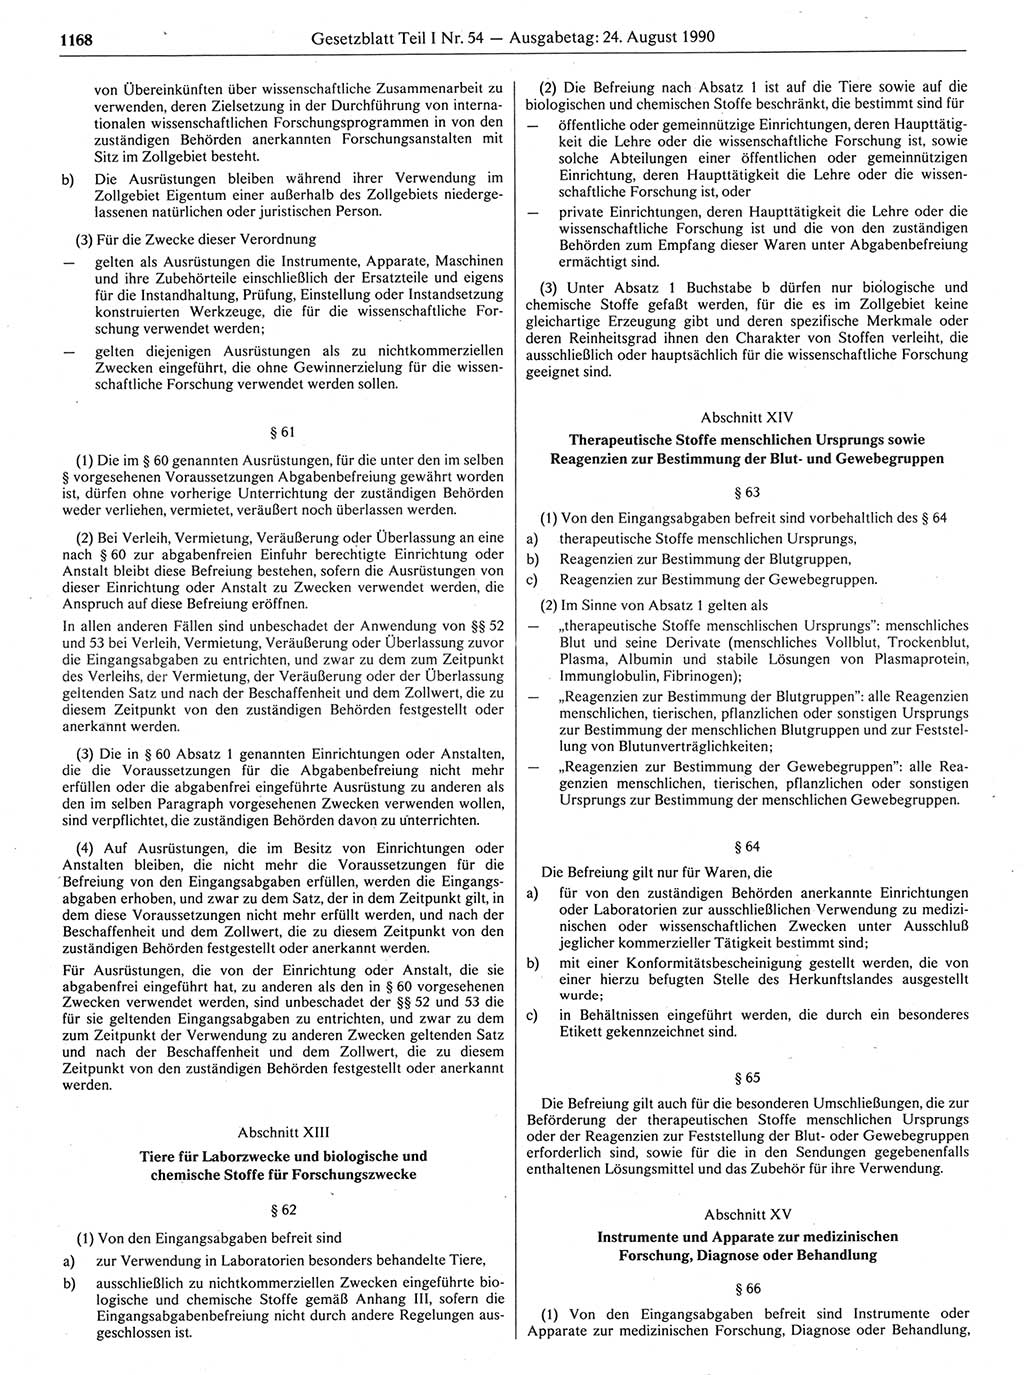 Gesetzblatt (GBl.) der Deutschen Demokratischen Republik (DDR) Teil Ⅰ 1990, Seite 1168 (GBl. DDR Ⅰ 1990, S. 1168)